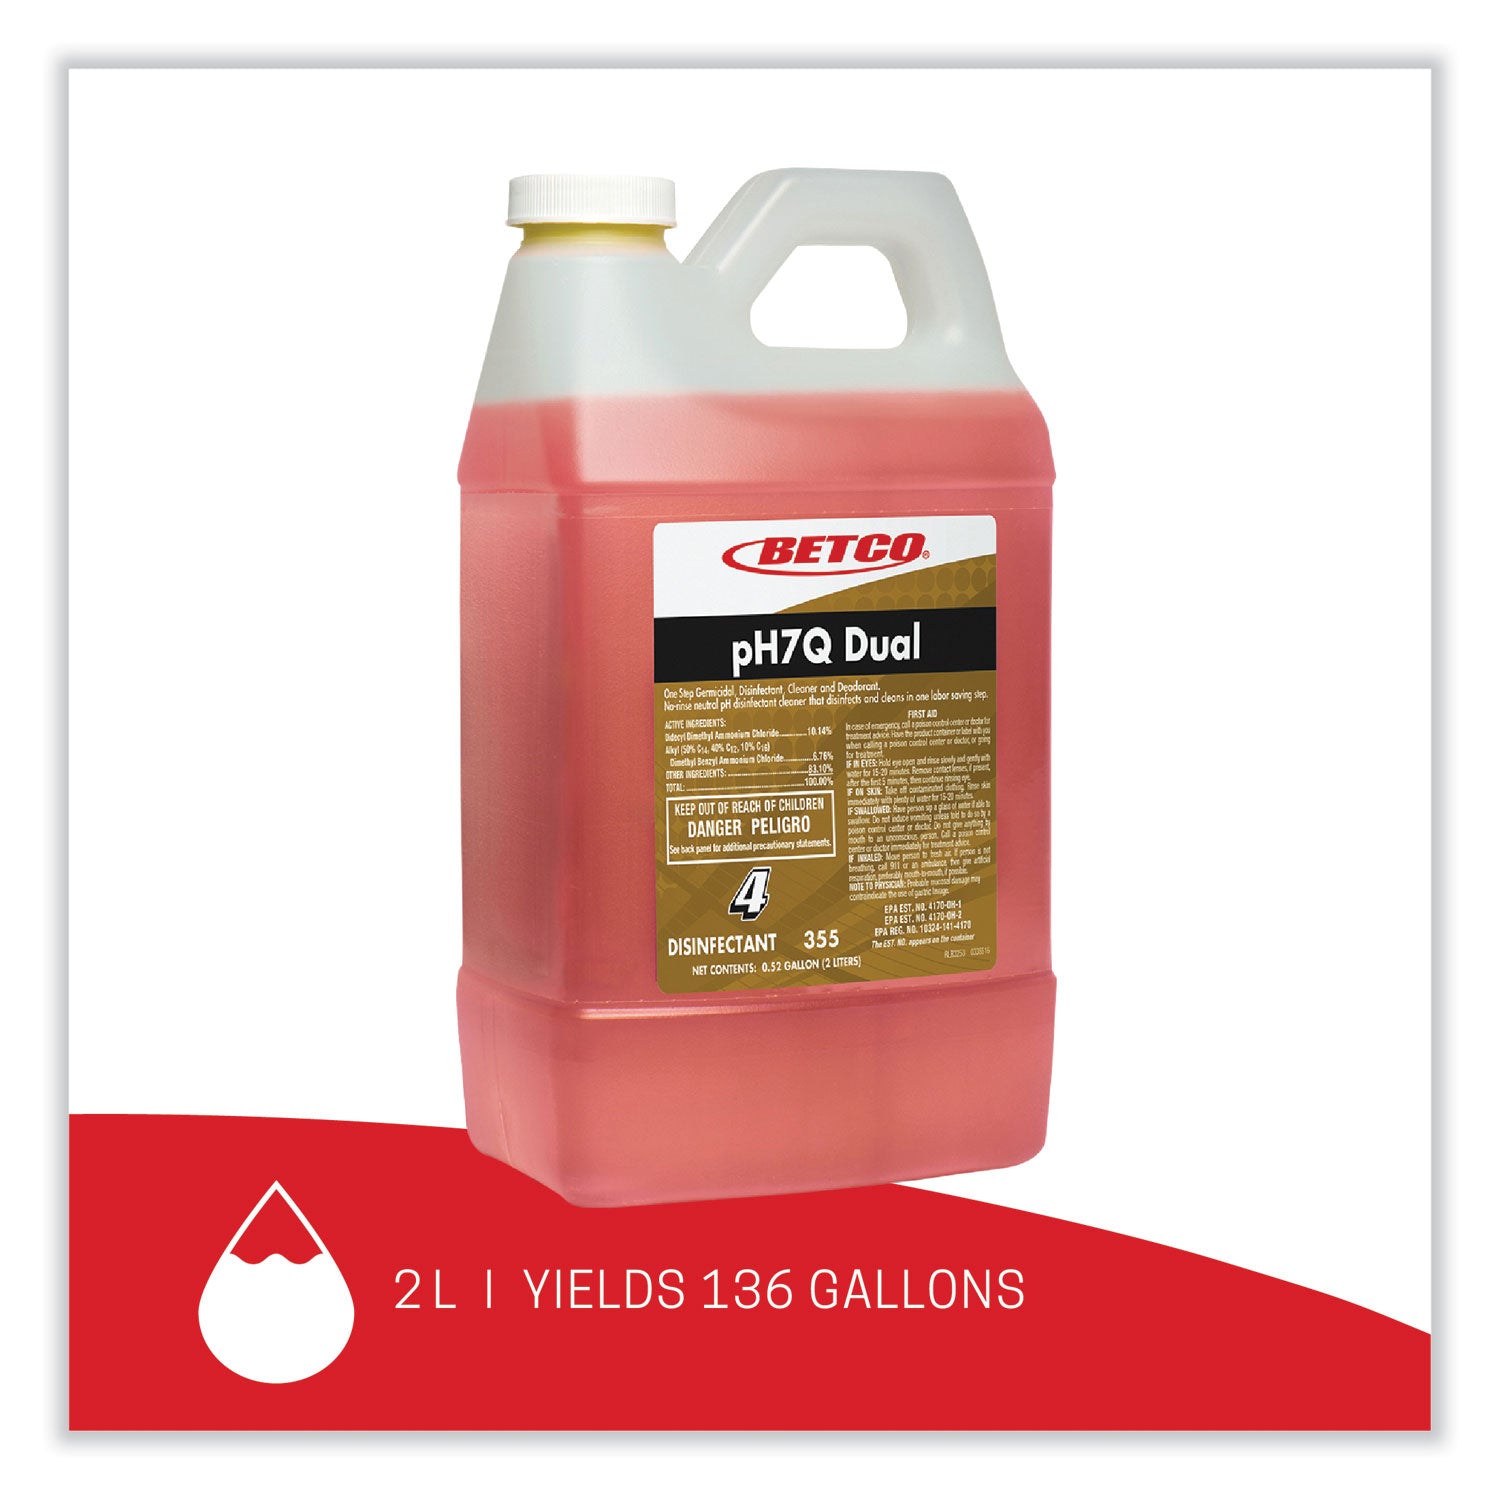 ph7q-dual-neutral-disinfectant-cleaner-lemon-scent-676-oz-bottle-4-carton_bet3554700 - 2